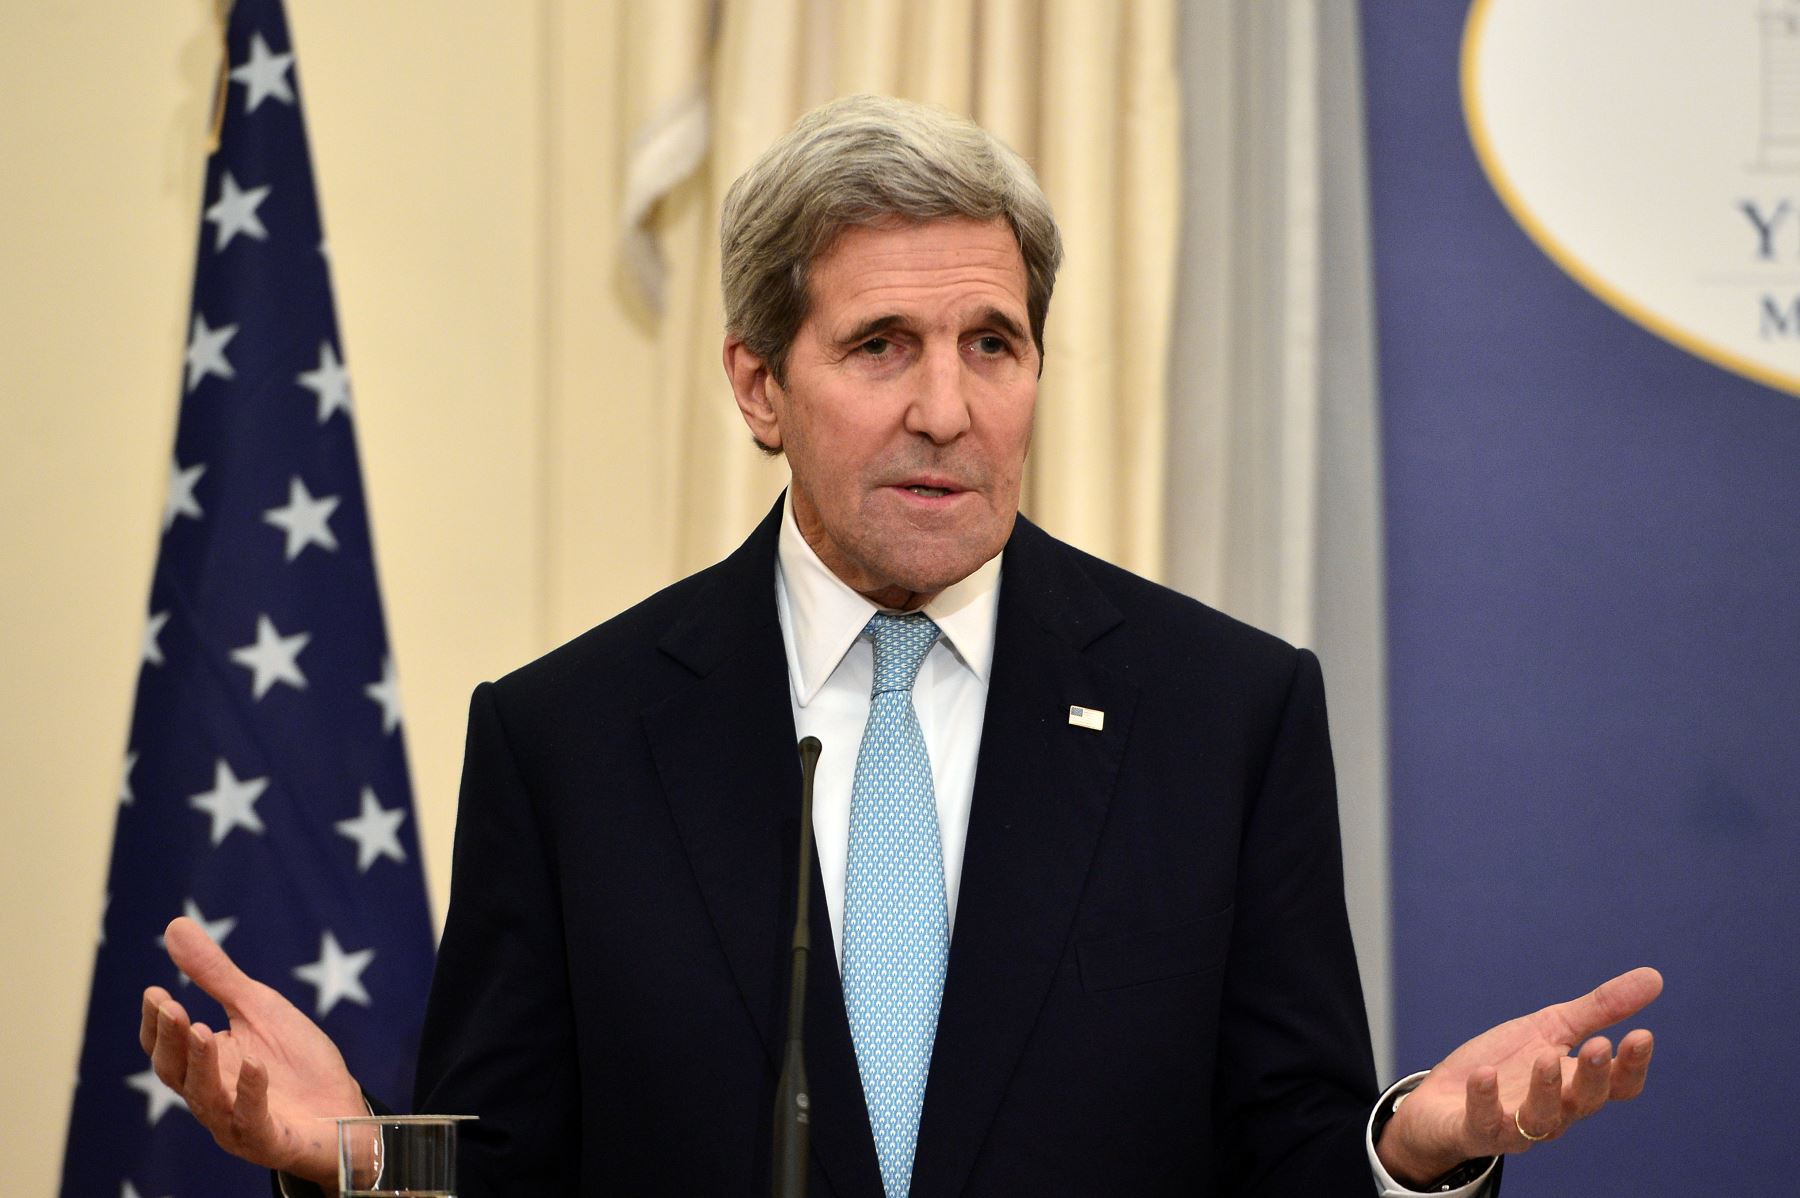 Kerry aseguró que se trata de "una crisis mundial" y que "la verdadera solución (...) es poner fin lo antes posible al conflicto en Siria". Foto: AFP